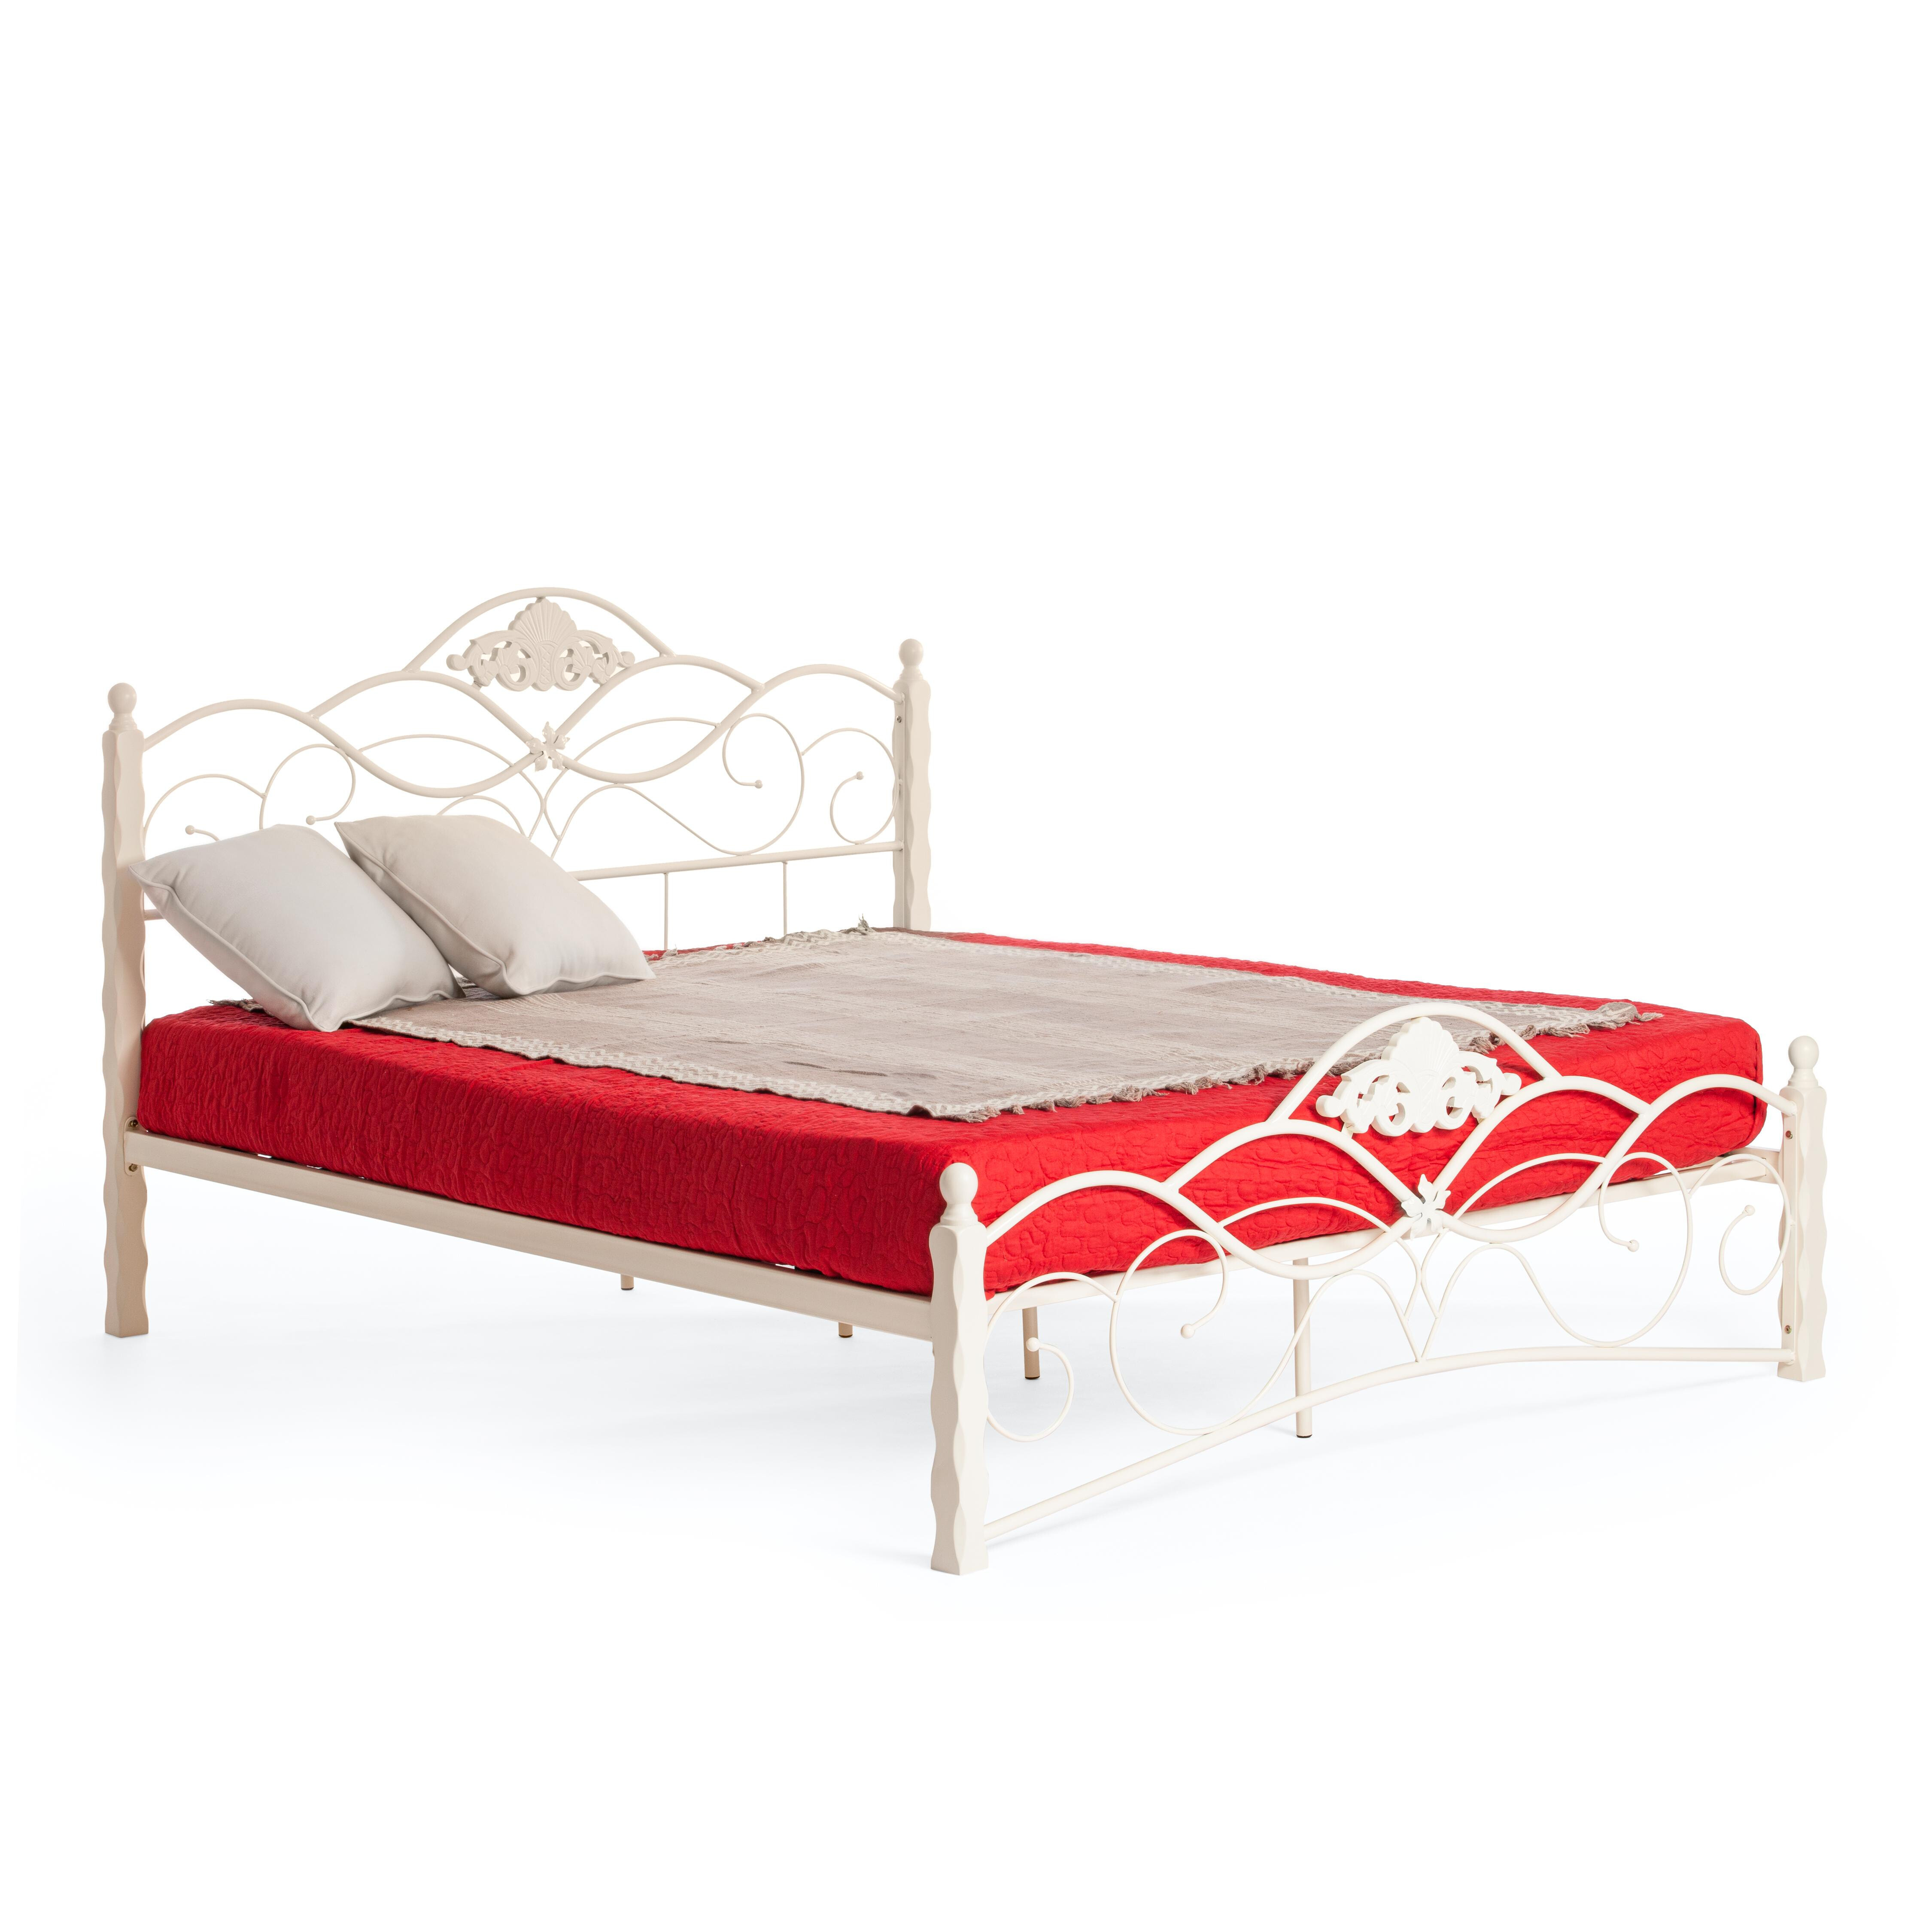 Кровать двуспальная металлическая 160х200 см белая Canzona Wood slat base